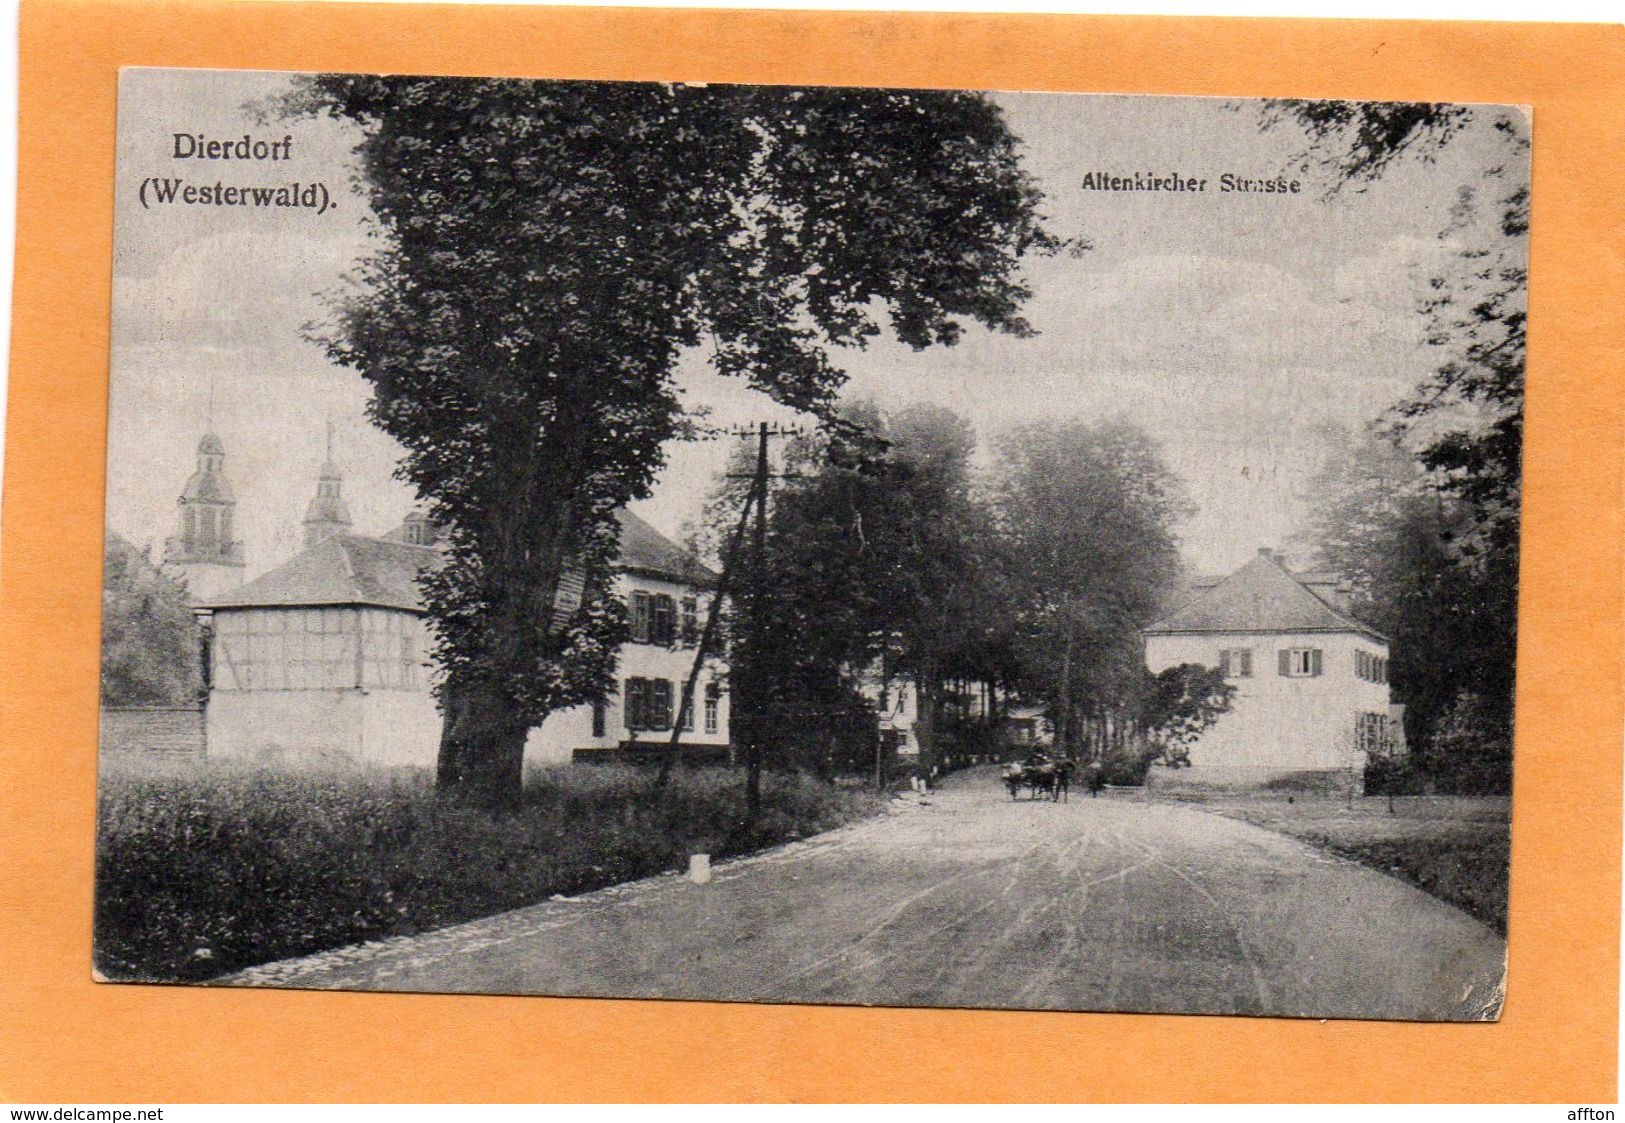 Dierdorf Westerwald Germany 1915 Postcard - Dierdorf